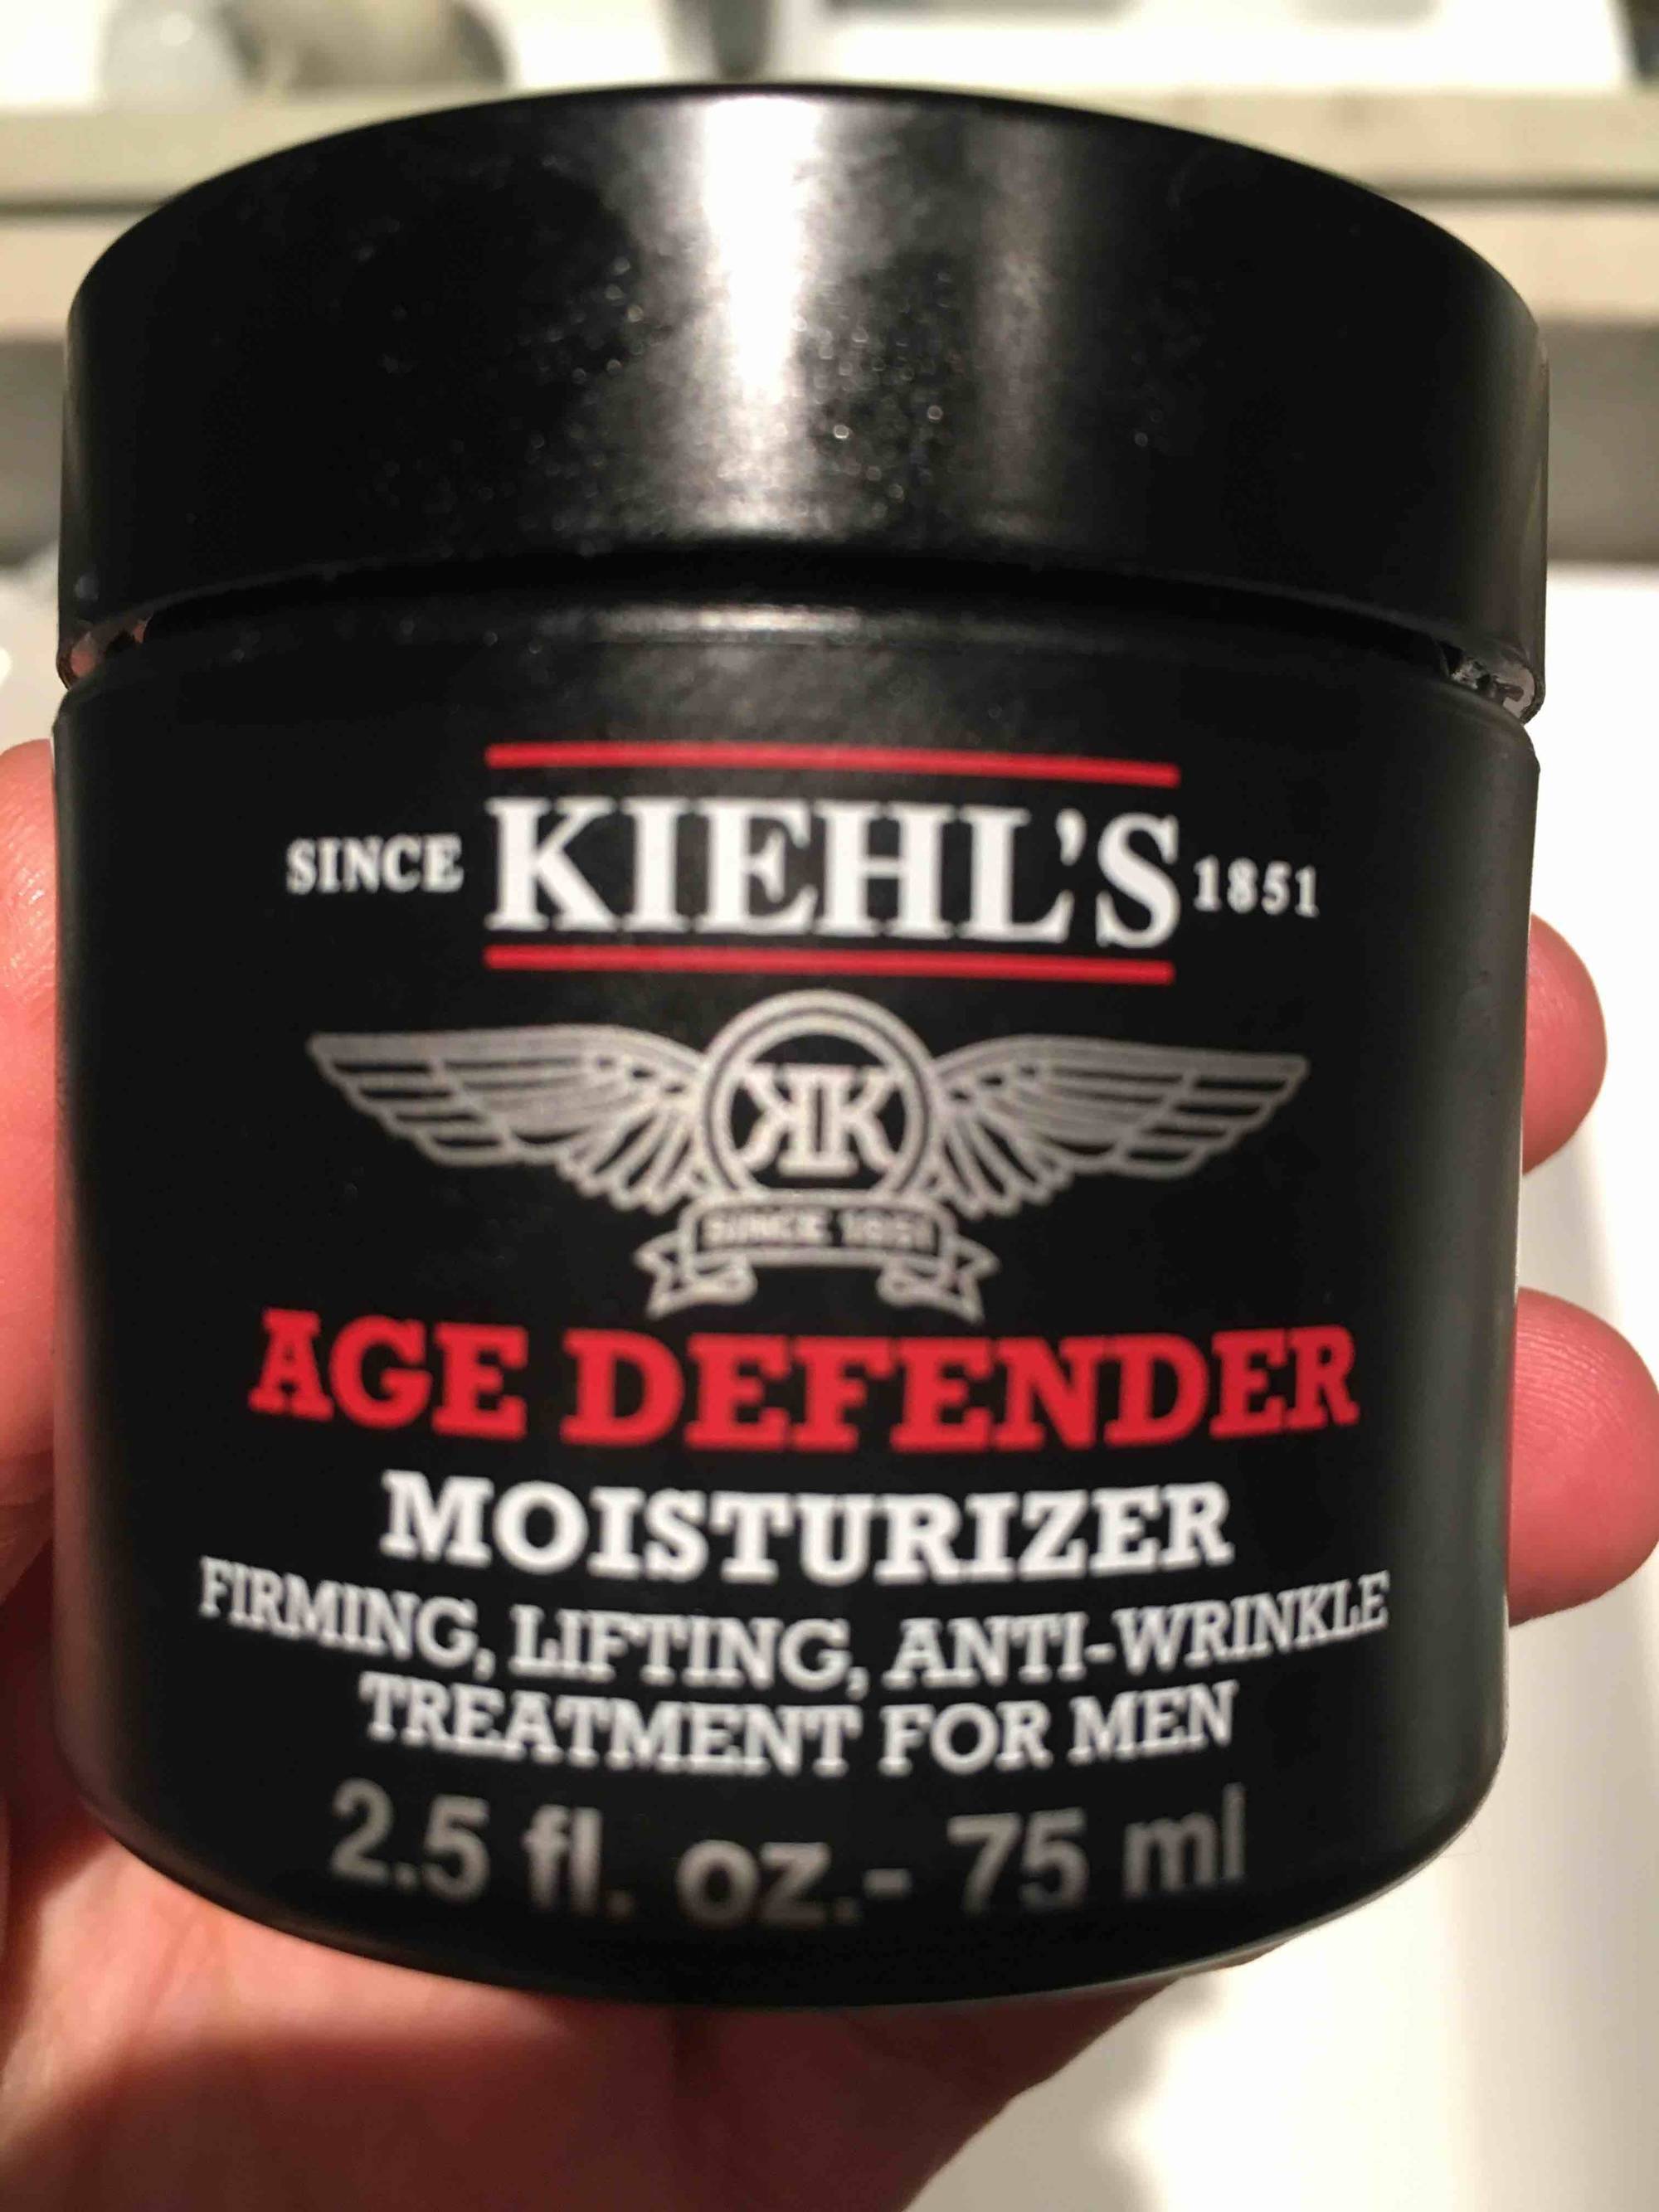 KIEHL'S - Age defender moisturizer